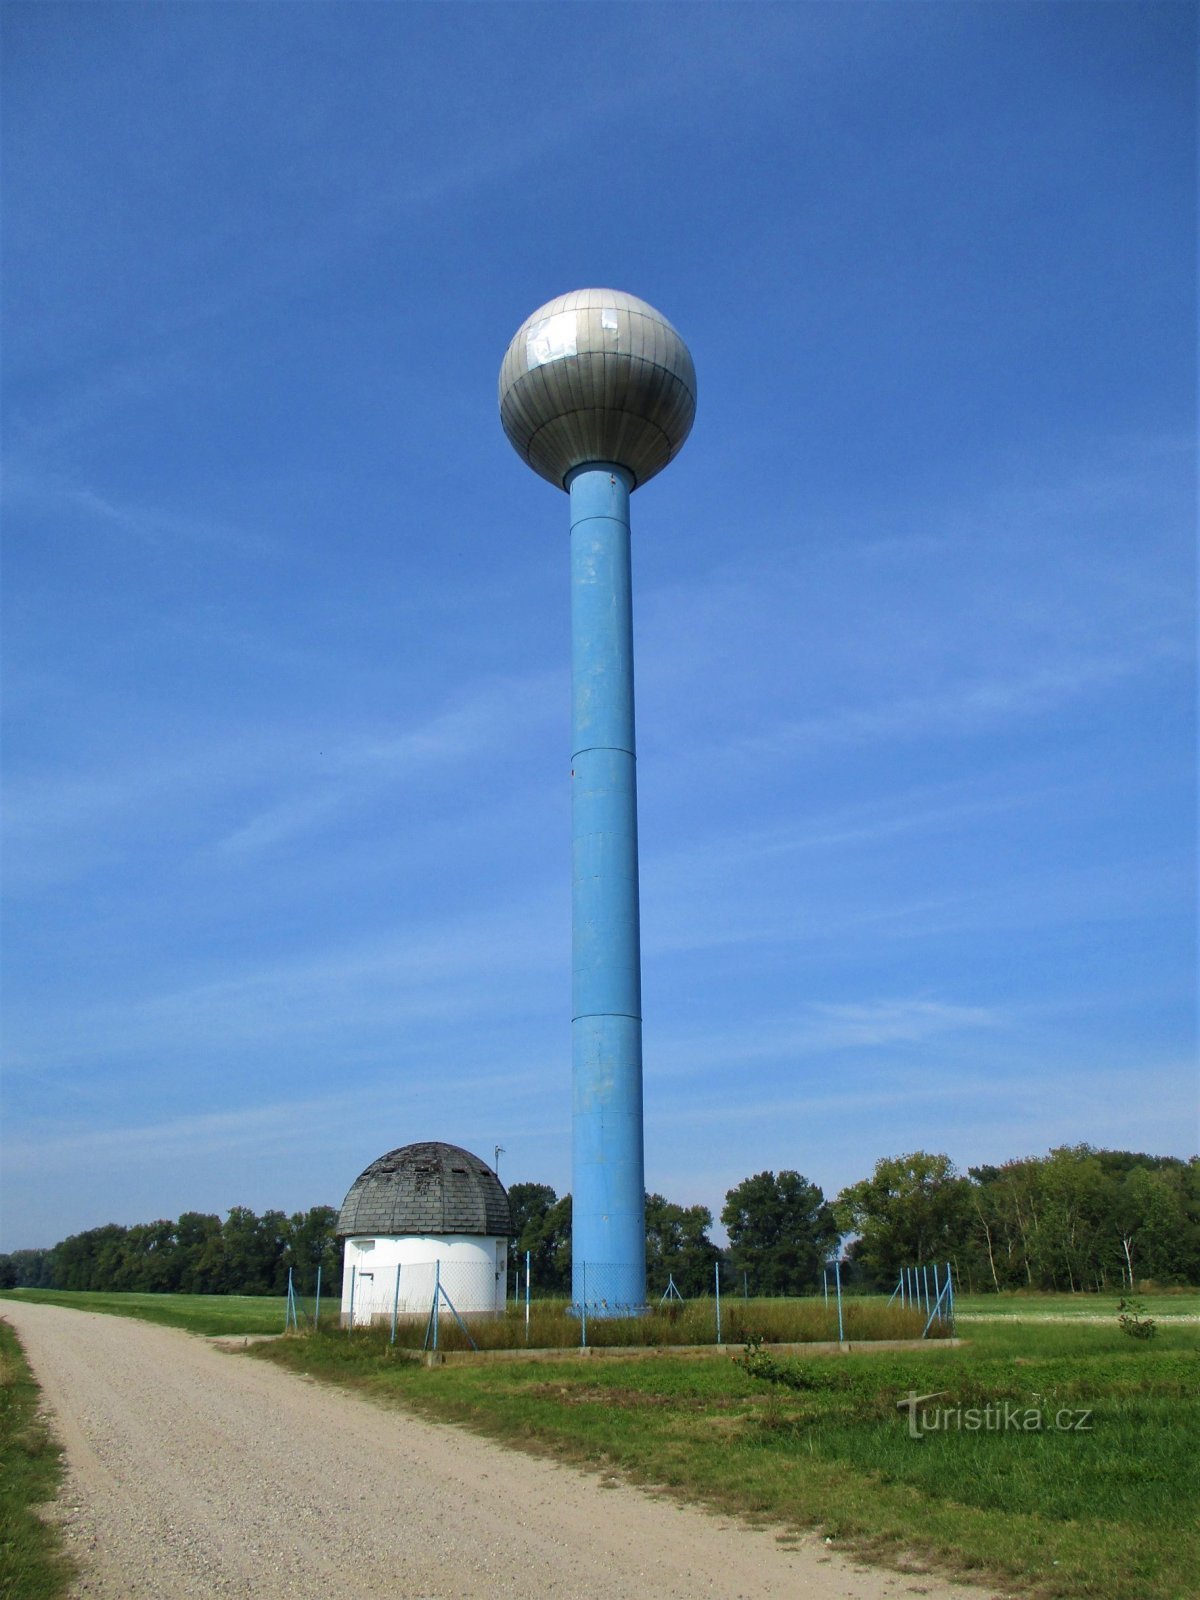 Vodni zbiralnik stolpa Aquaglobus (Kratonohy, 13.9.2020. XNUMX. XNUMX)